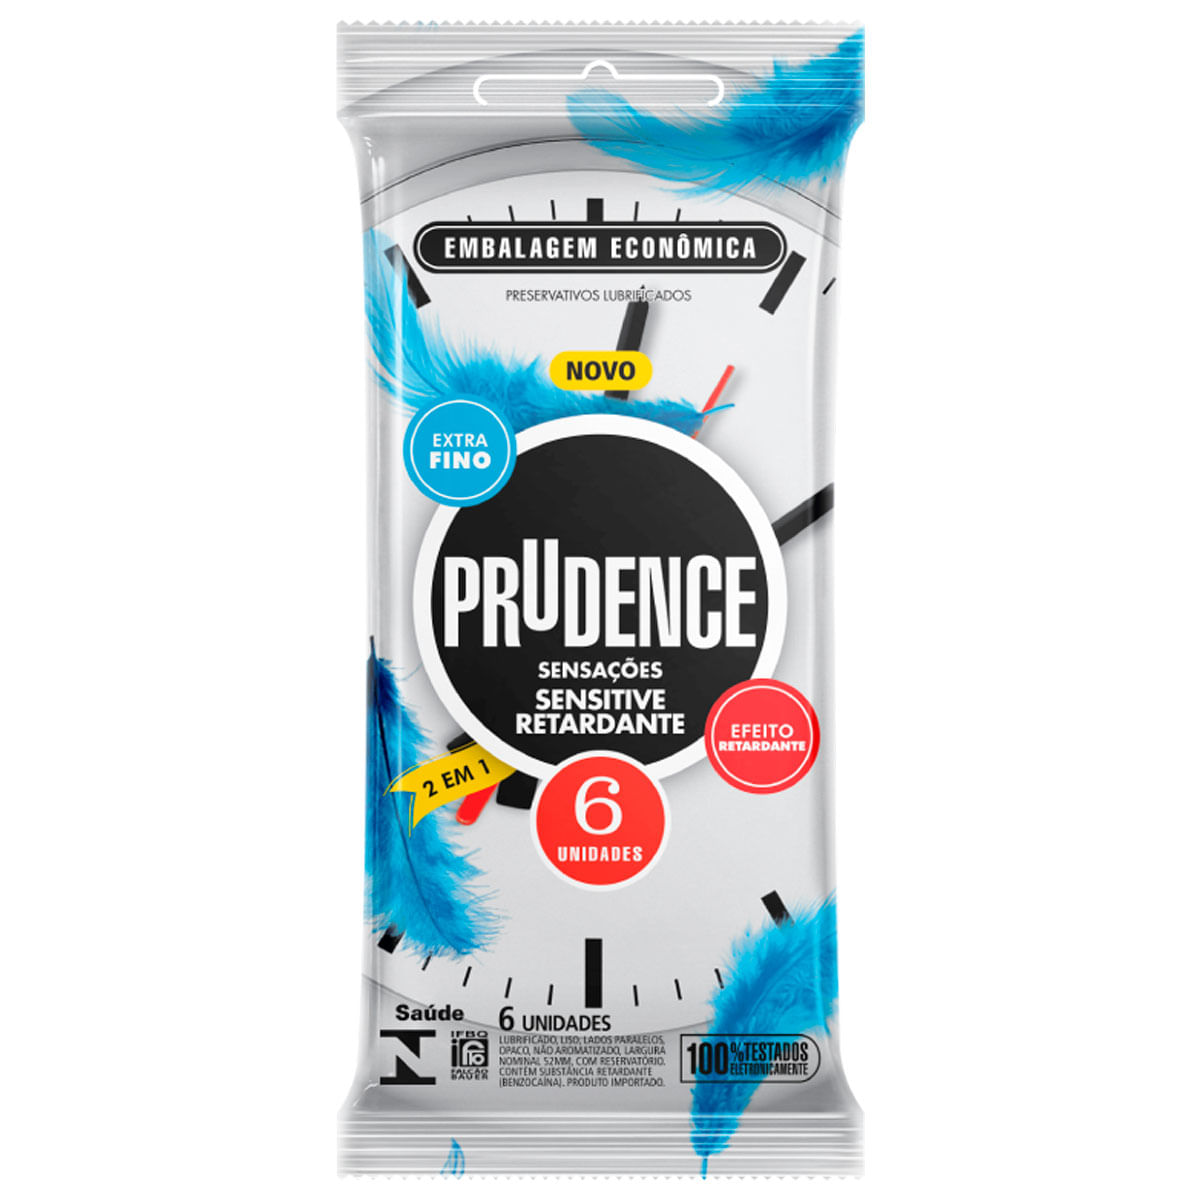 Preservativo Sensitive Retardante Extra Fino 2 em 1 com 6 unidades Prudence